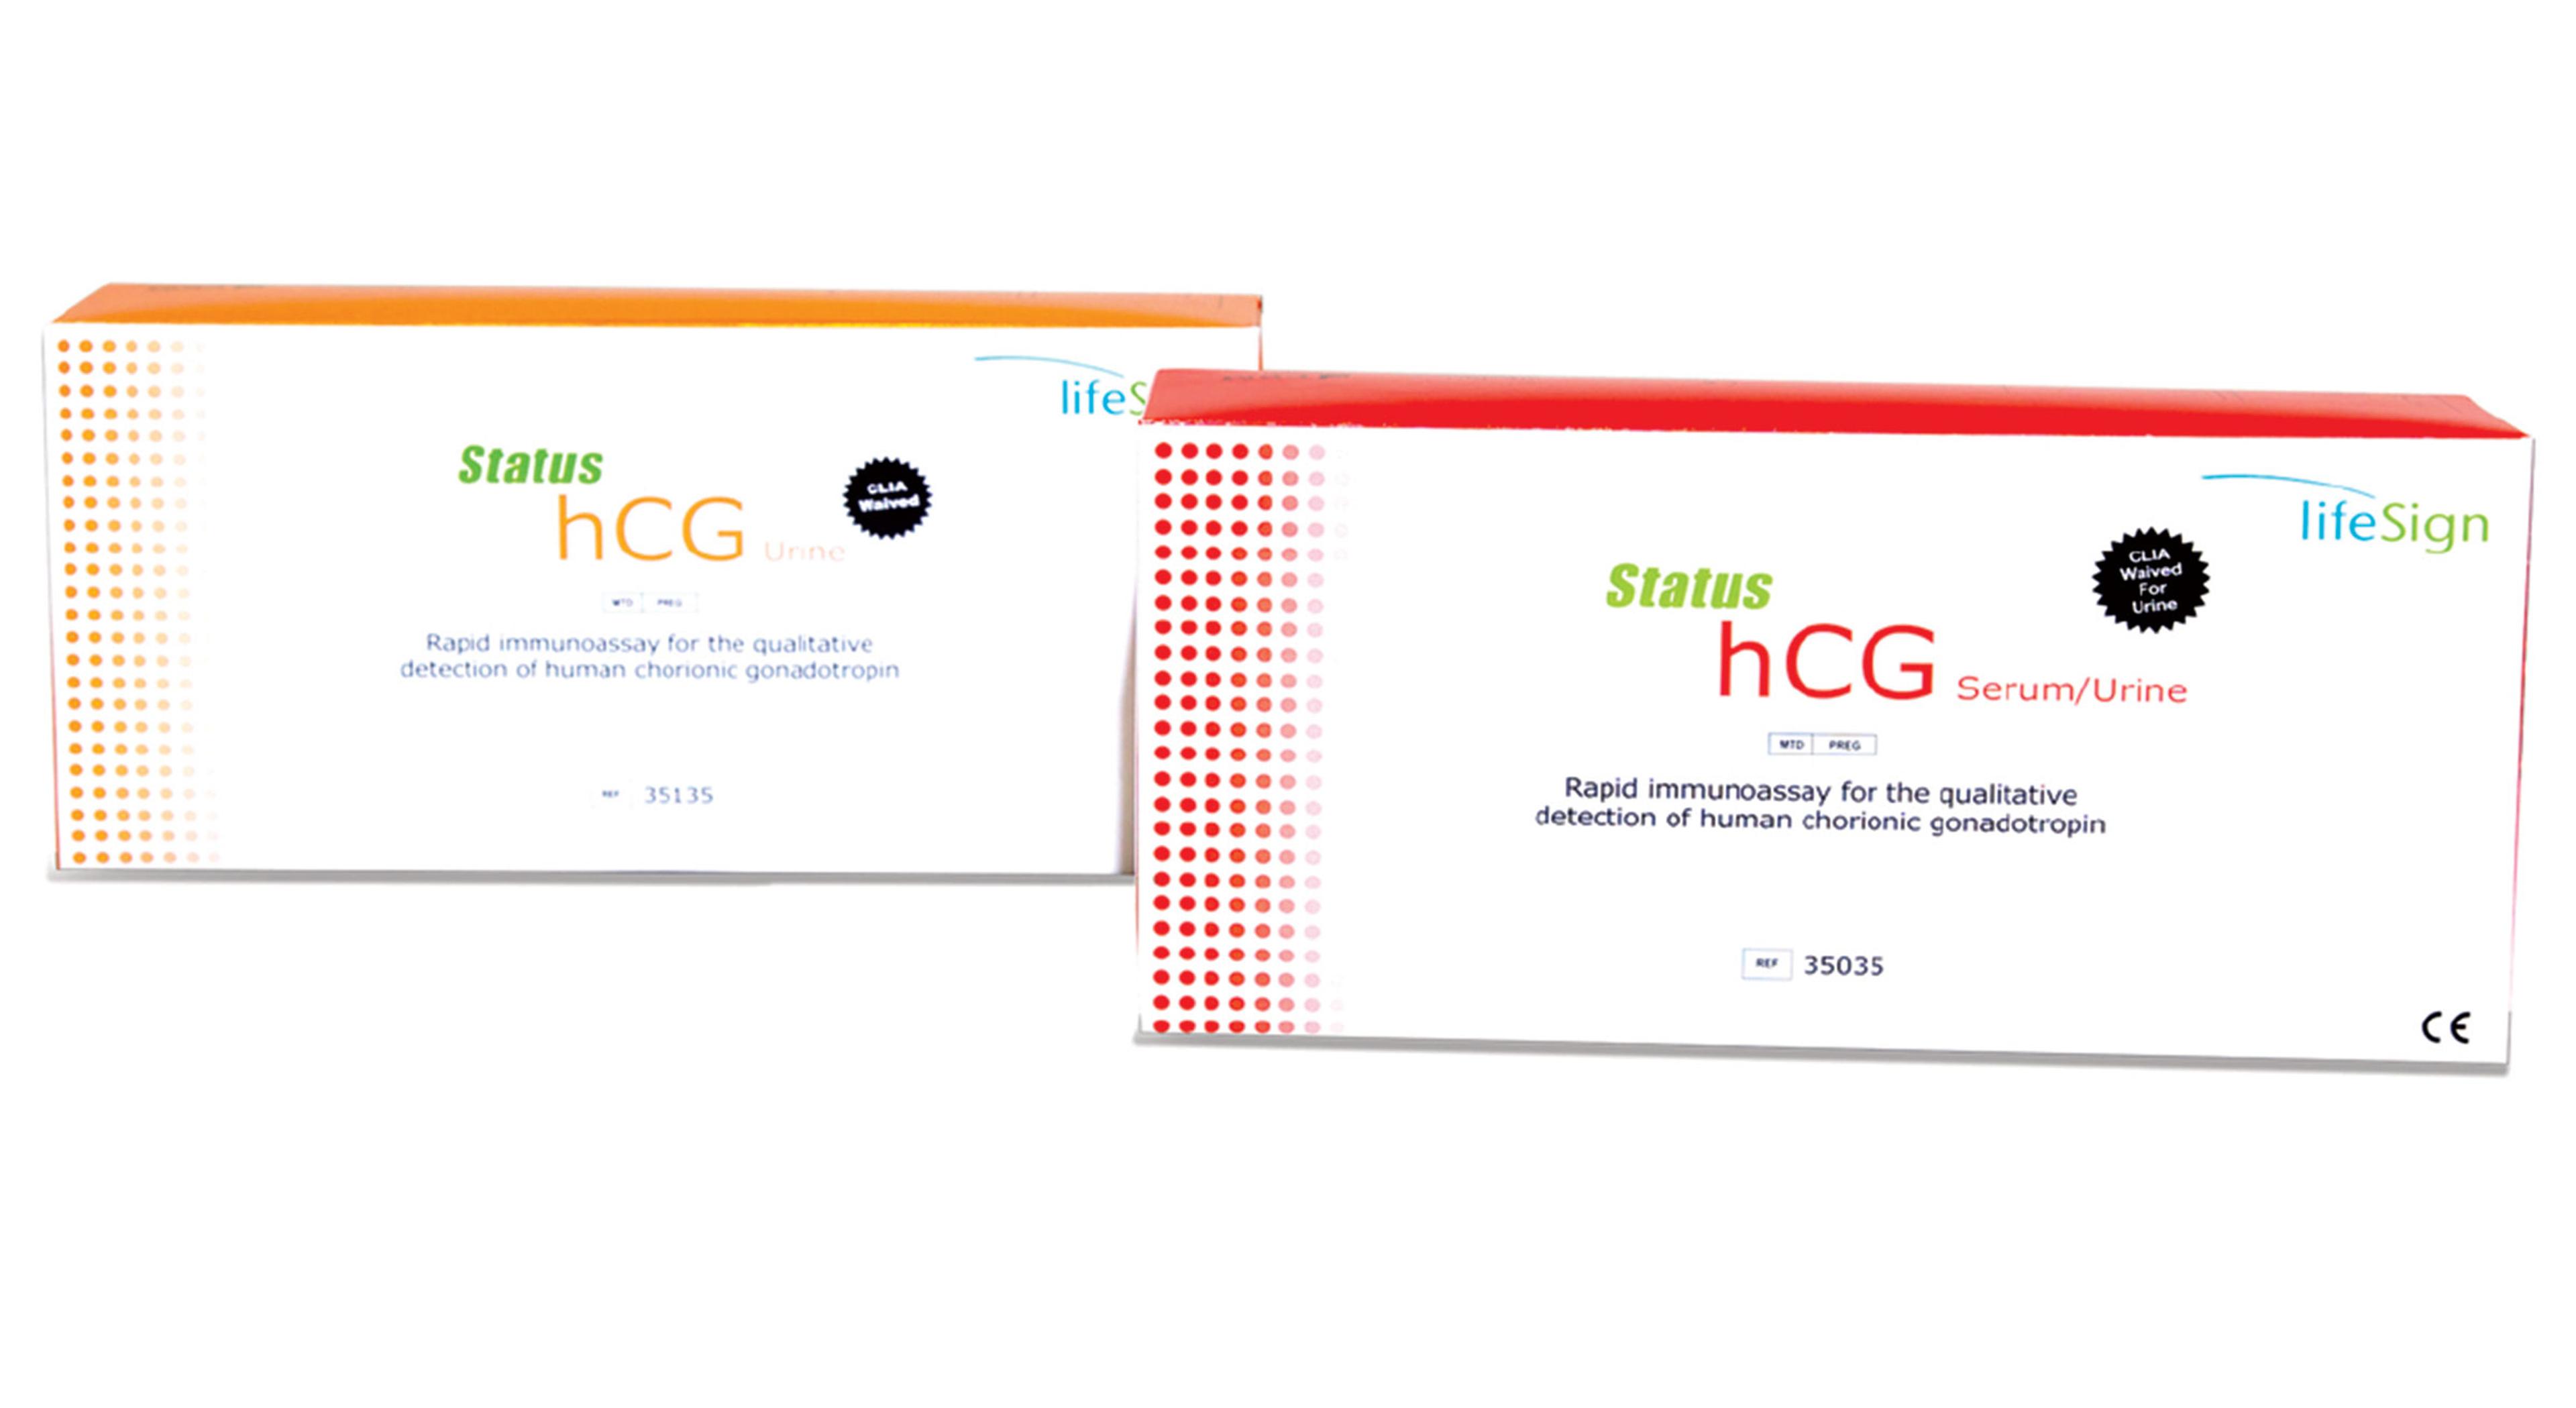 BioSign hCG-Urine/Serum